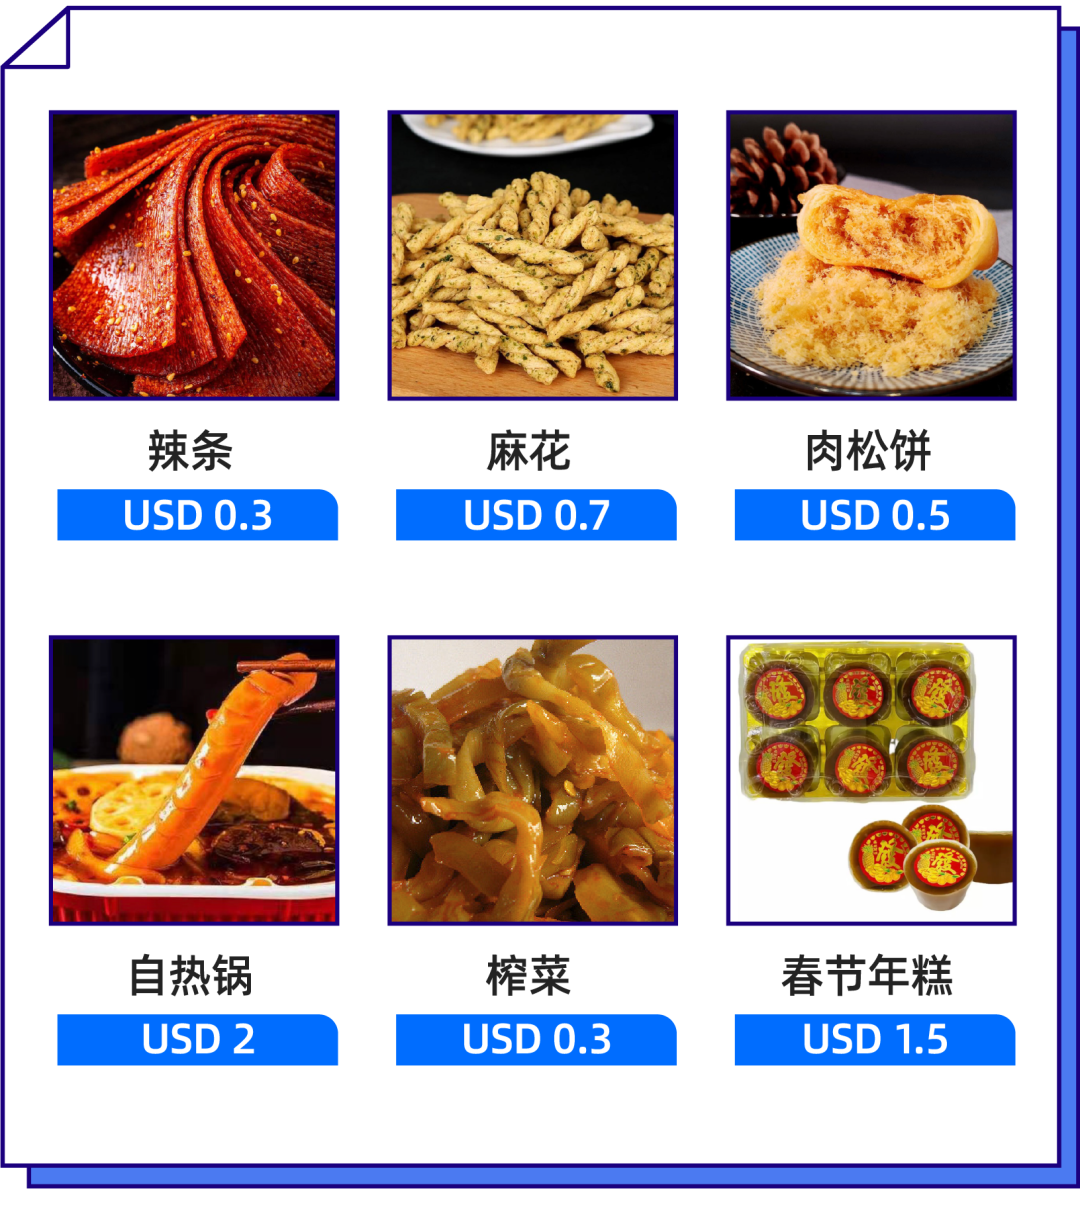 东南亚的中国胃，这些国产美食竟然这么有市场！